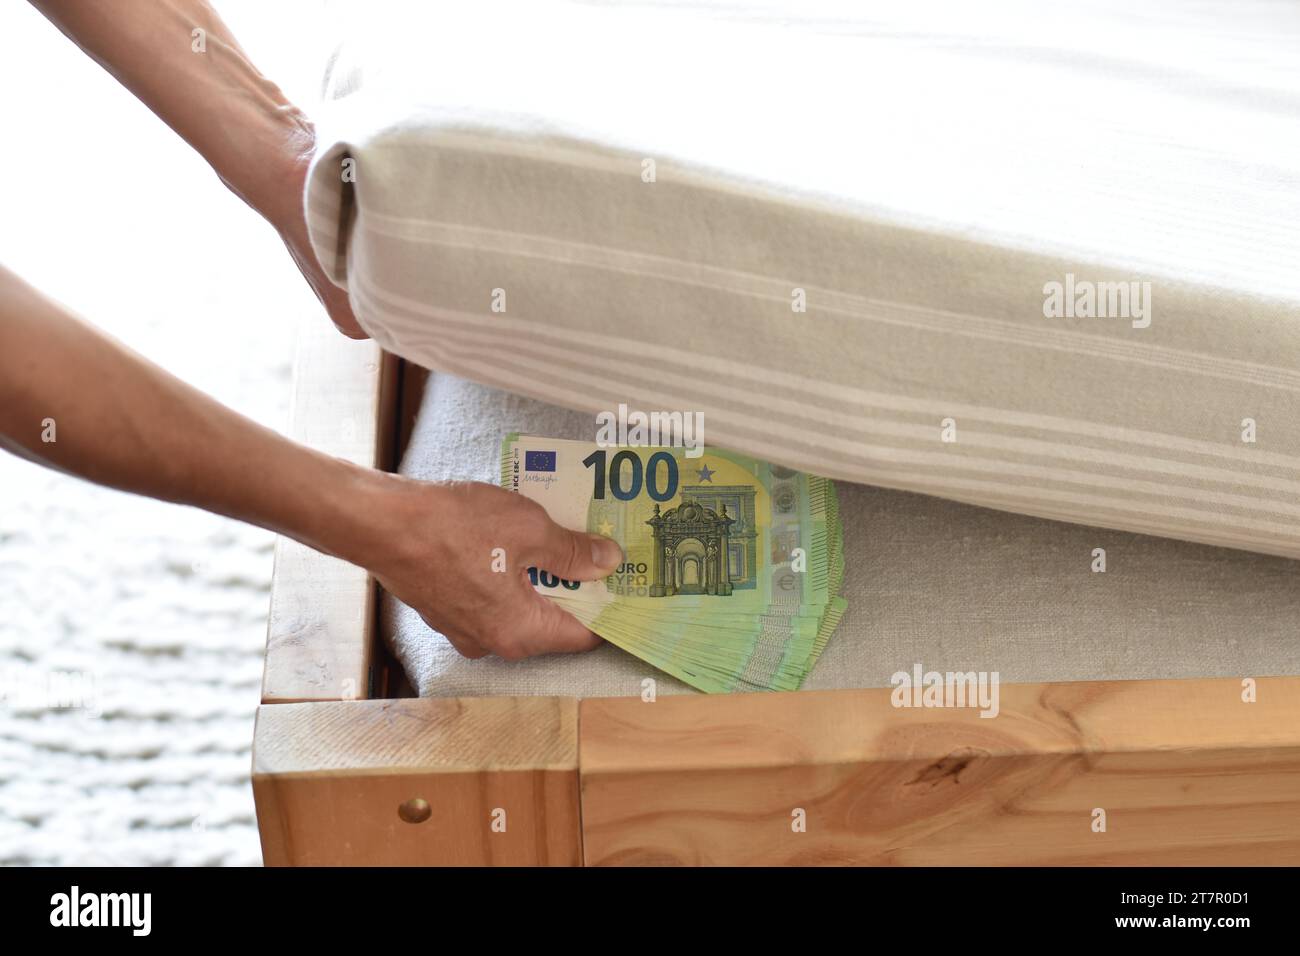 Eine Hand legt viele hundert Euro-Banknoten unter einer Matratze ein, was das Sparen in Bargeld symbolisiert Stockfoto